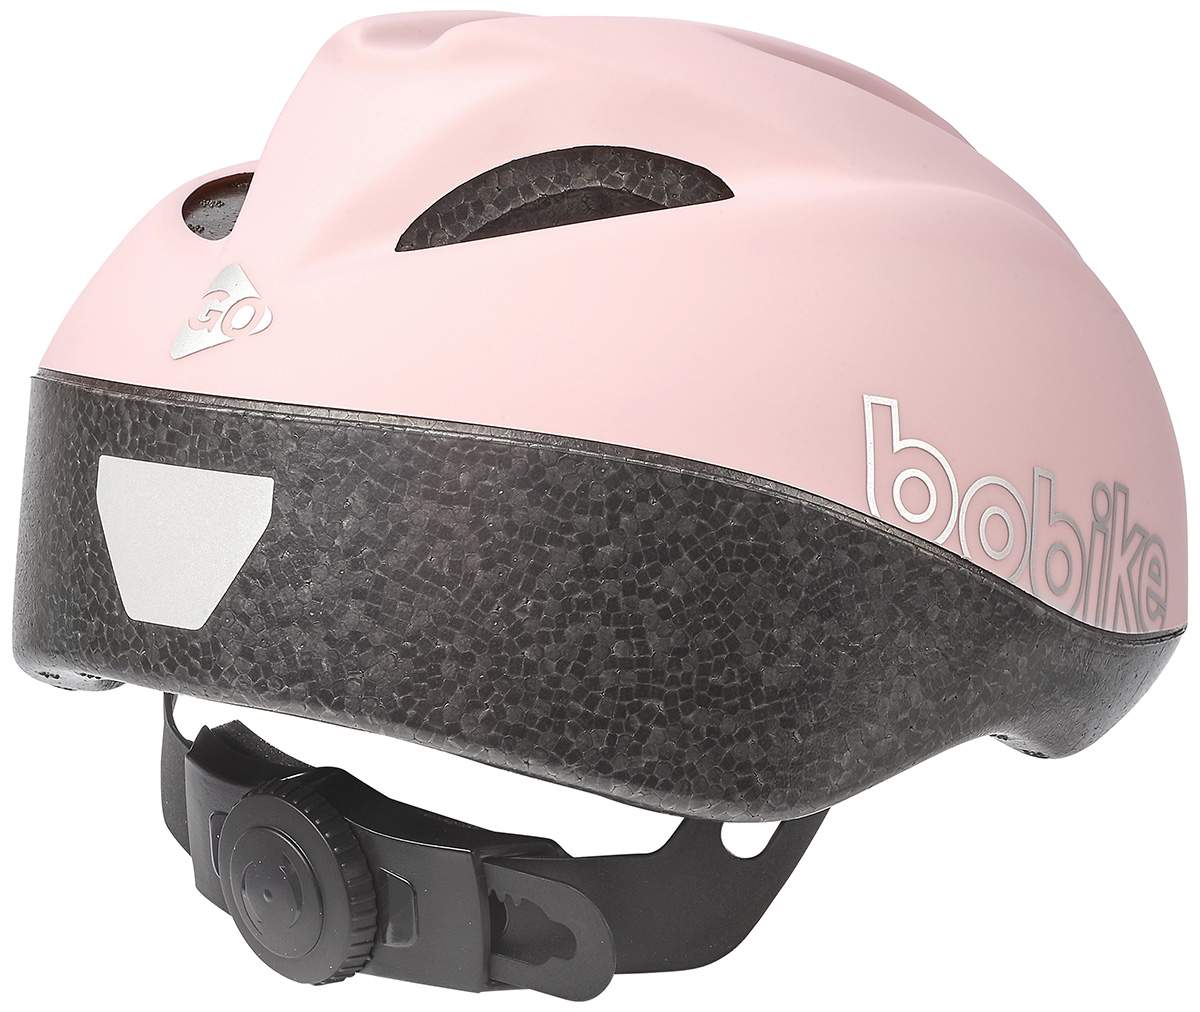 Велосипедный шлем Bobike Go, cotton candy pink, XS